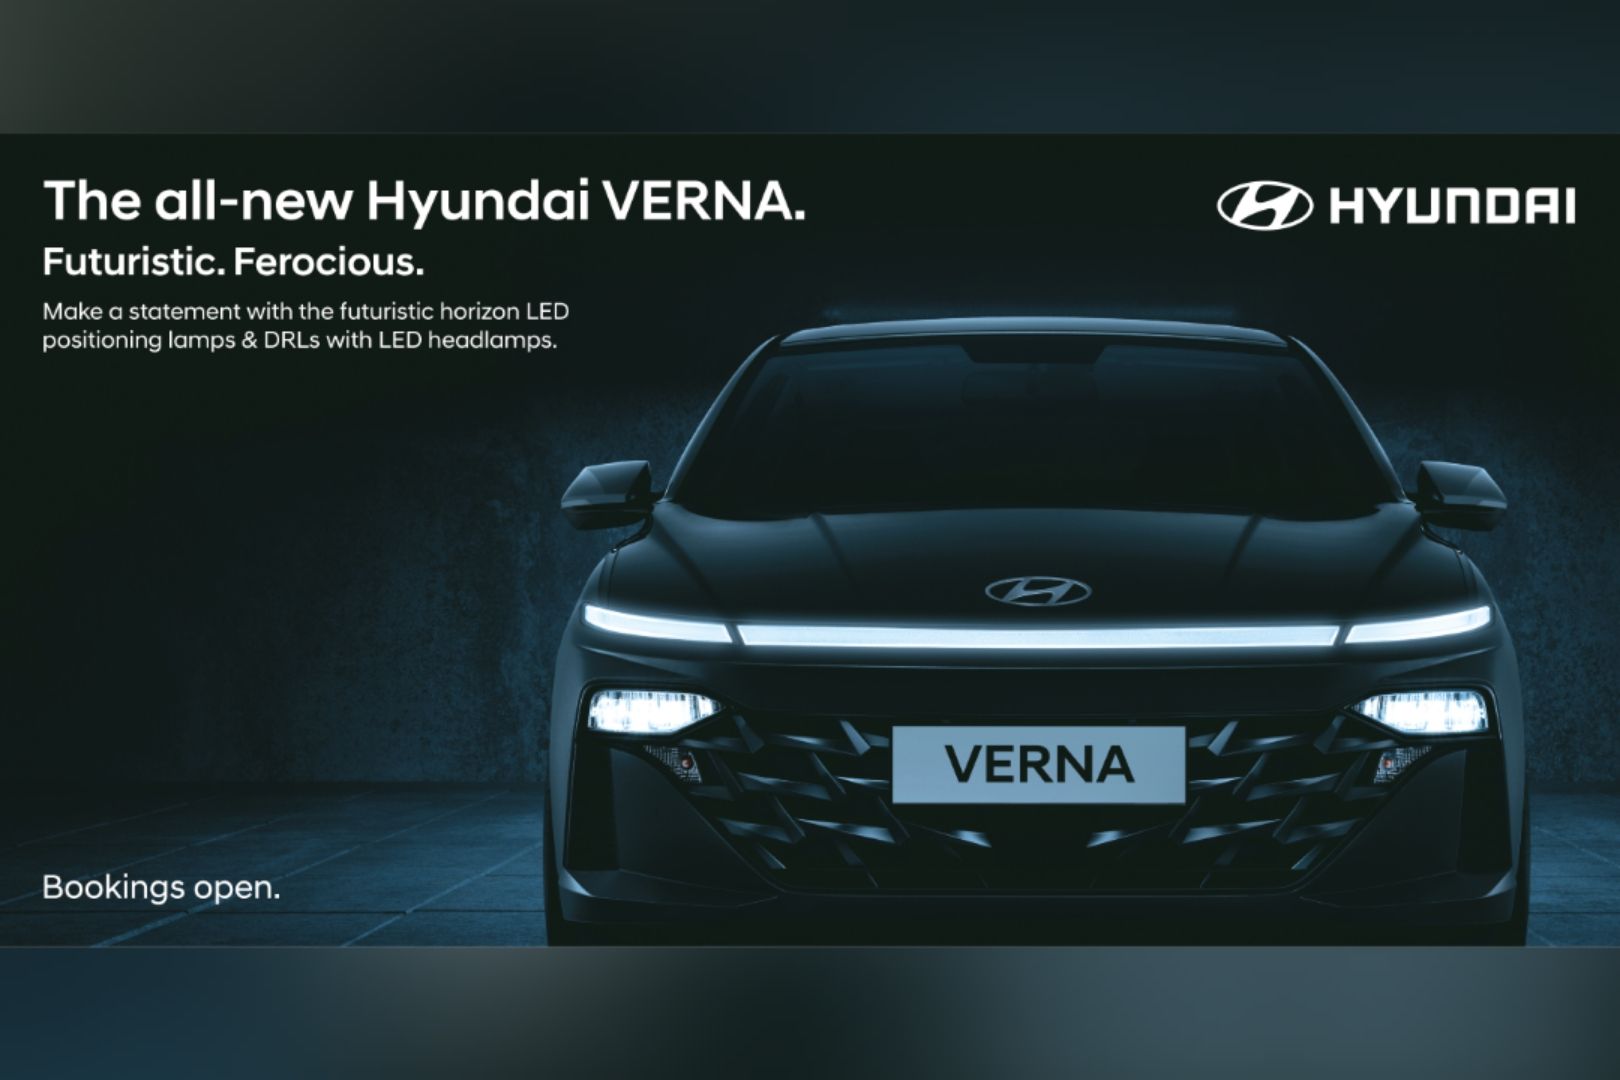 New-Gen Hyundai Verna